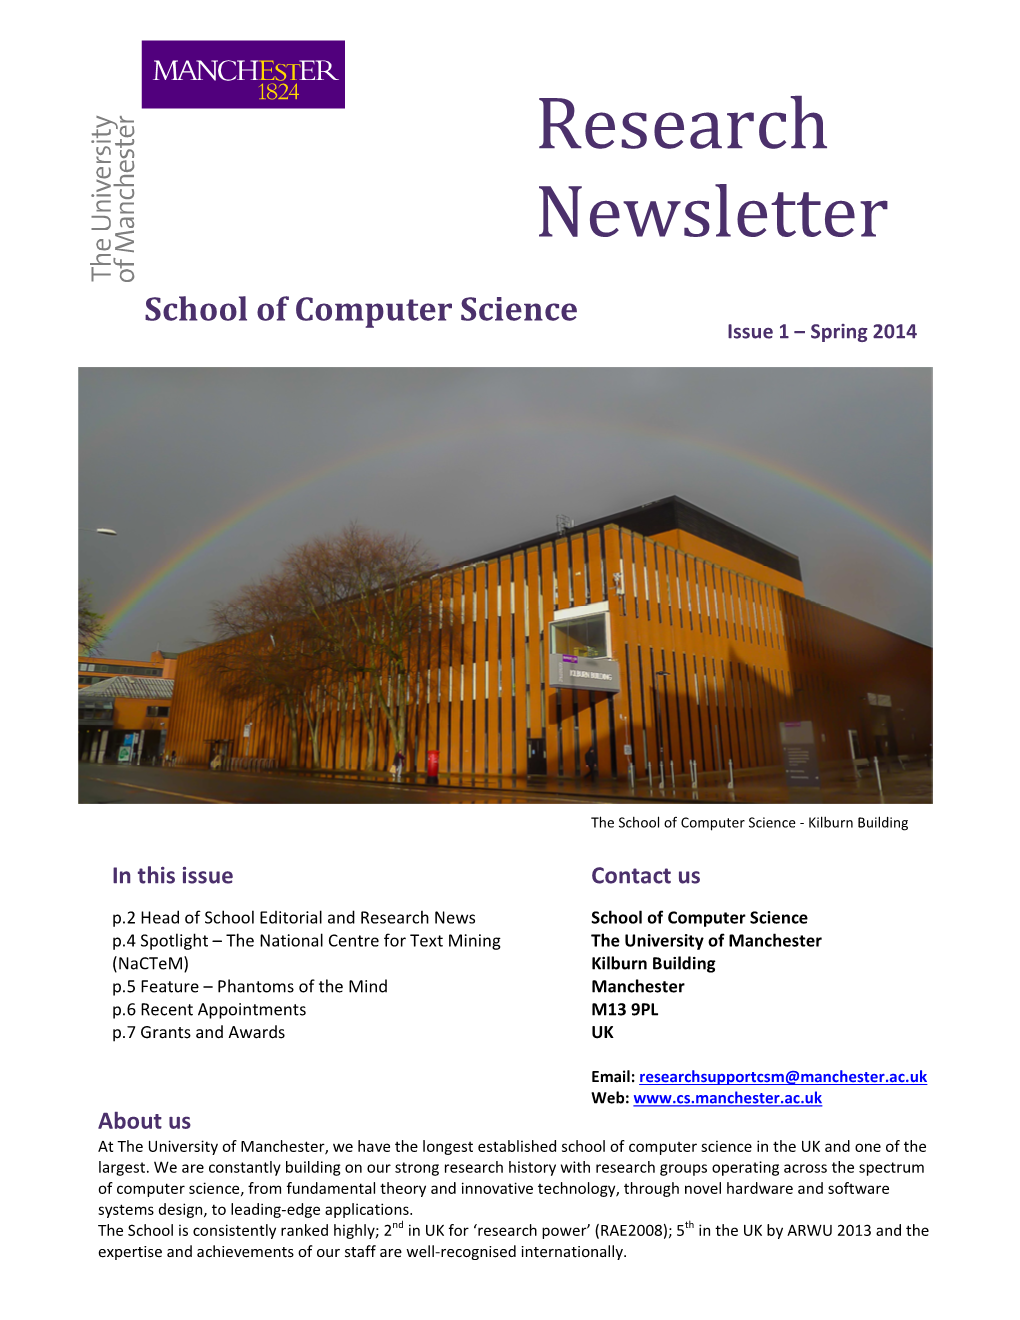 CS Research Newsletter 6